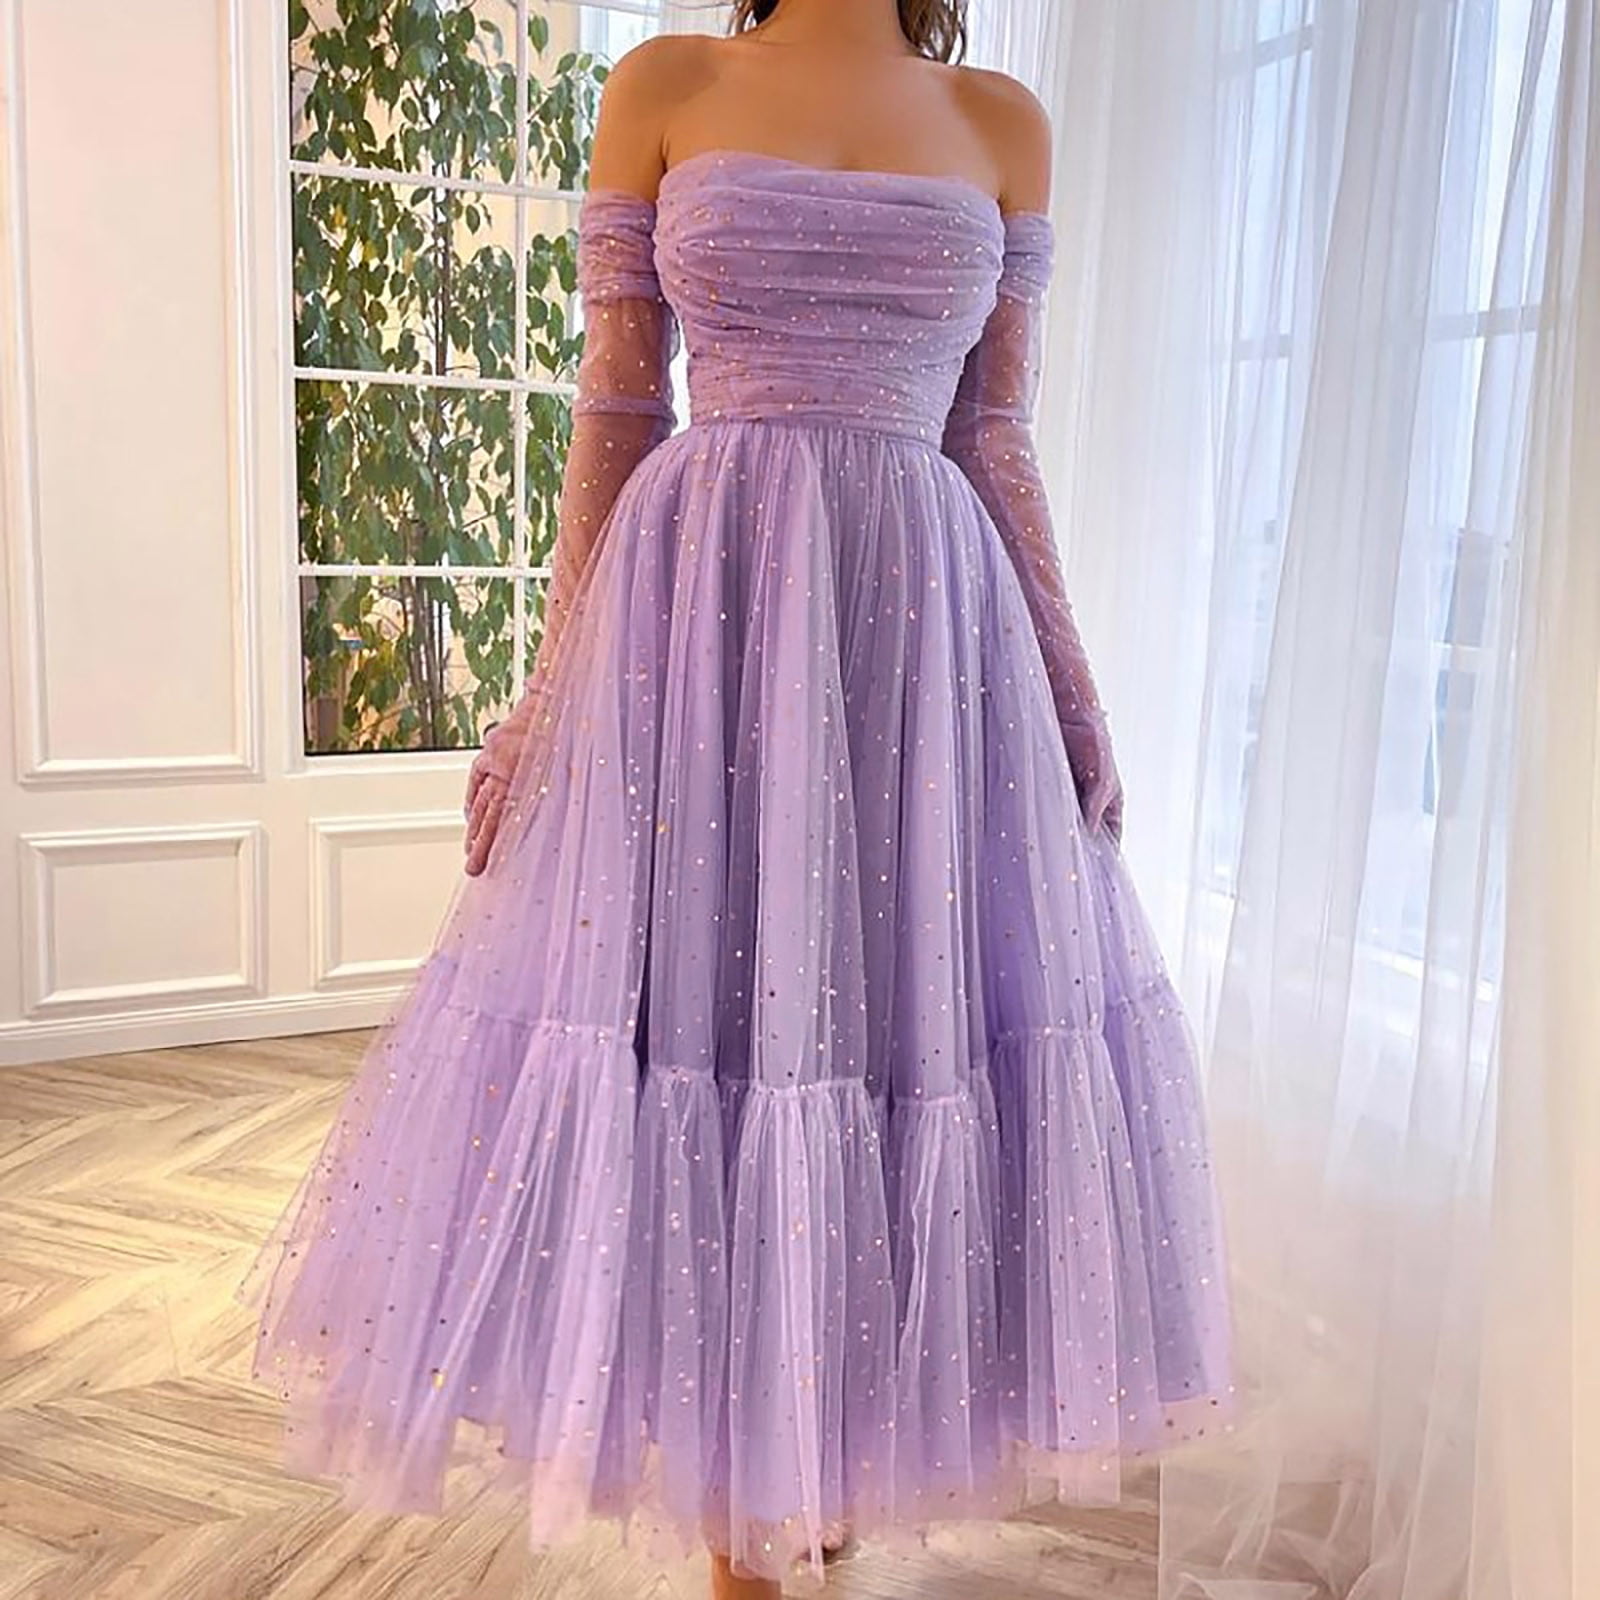 purple dress for women